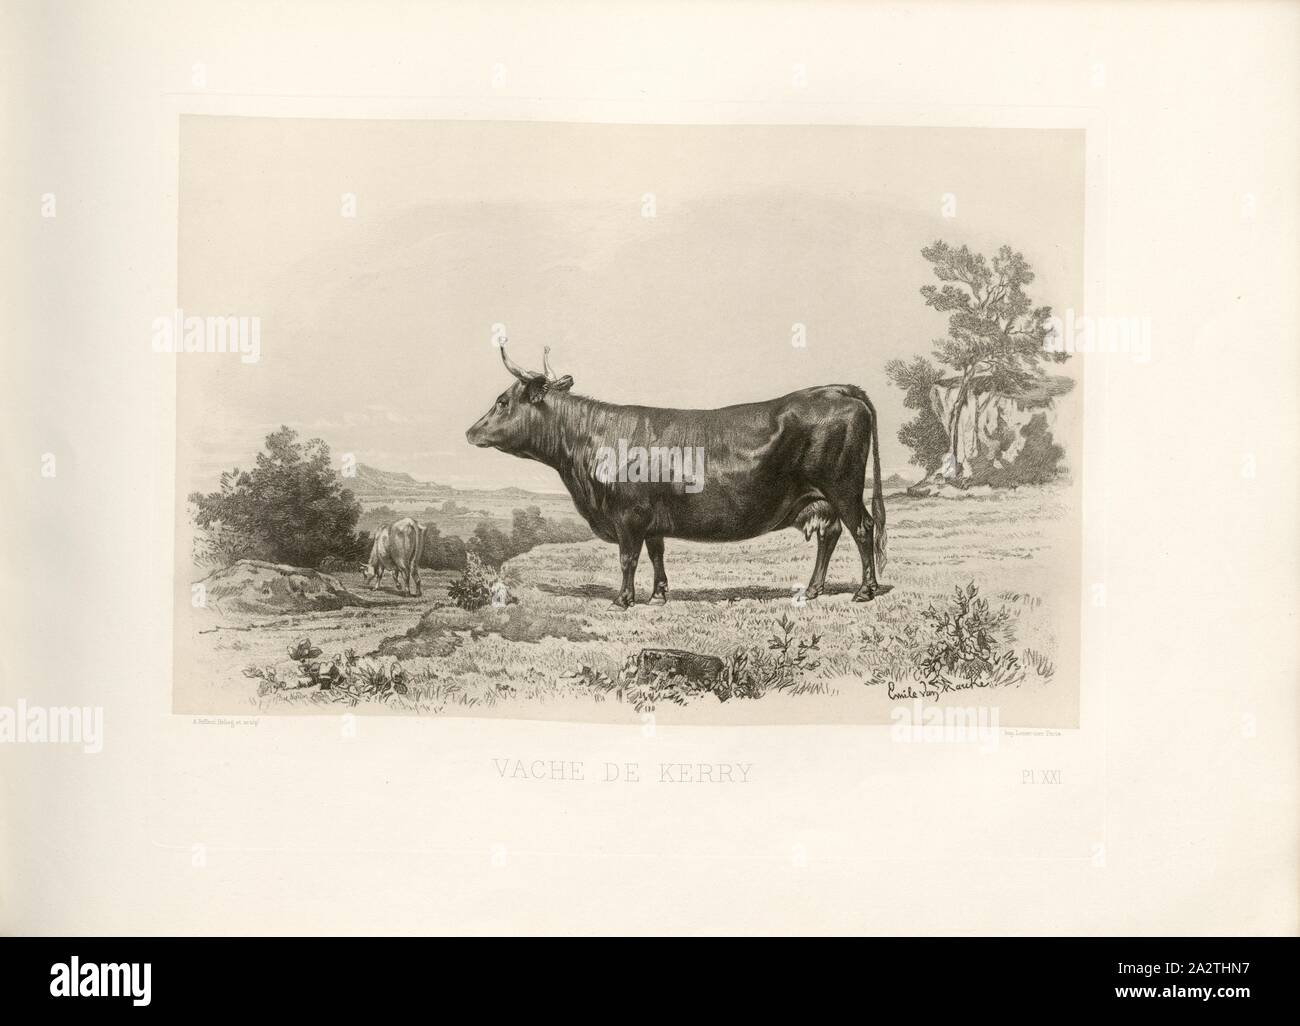 Kerry cow, British Cattle Breed, Cow, Signed: Phot., Nadar, Emile van Marcke; A. Riffaut Heliog., et sculp, Pl. XXI, p. 53, Tournachon, Adrien Alban (Phot.); Marcke, Emile van; Riffaut, A. (Heliog. et sc.), Emile Baudement: Les races bovines au concours universel agricole de Paris en 1856: études zootechniques. Bd. 2. Paris: Imprimerie Impériale, MDCCCLXI [1861 Stock Photo